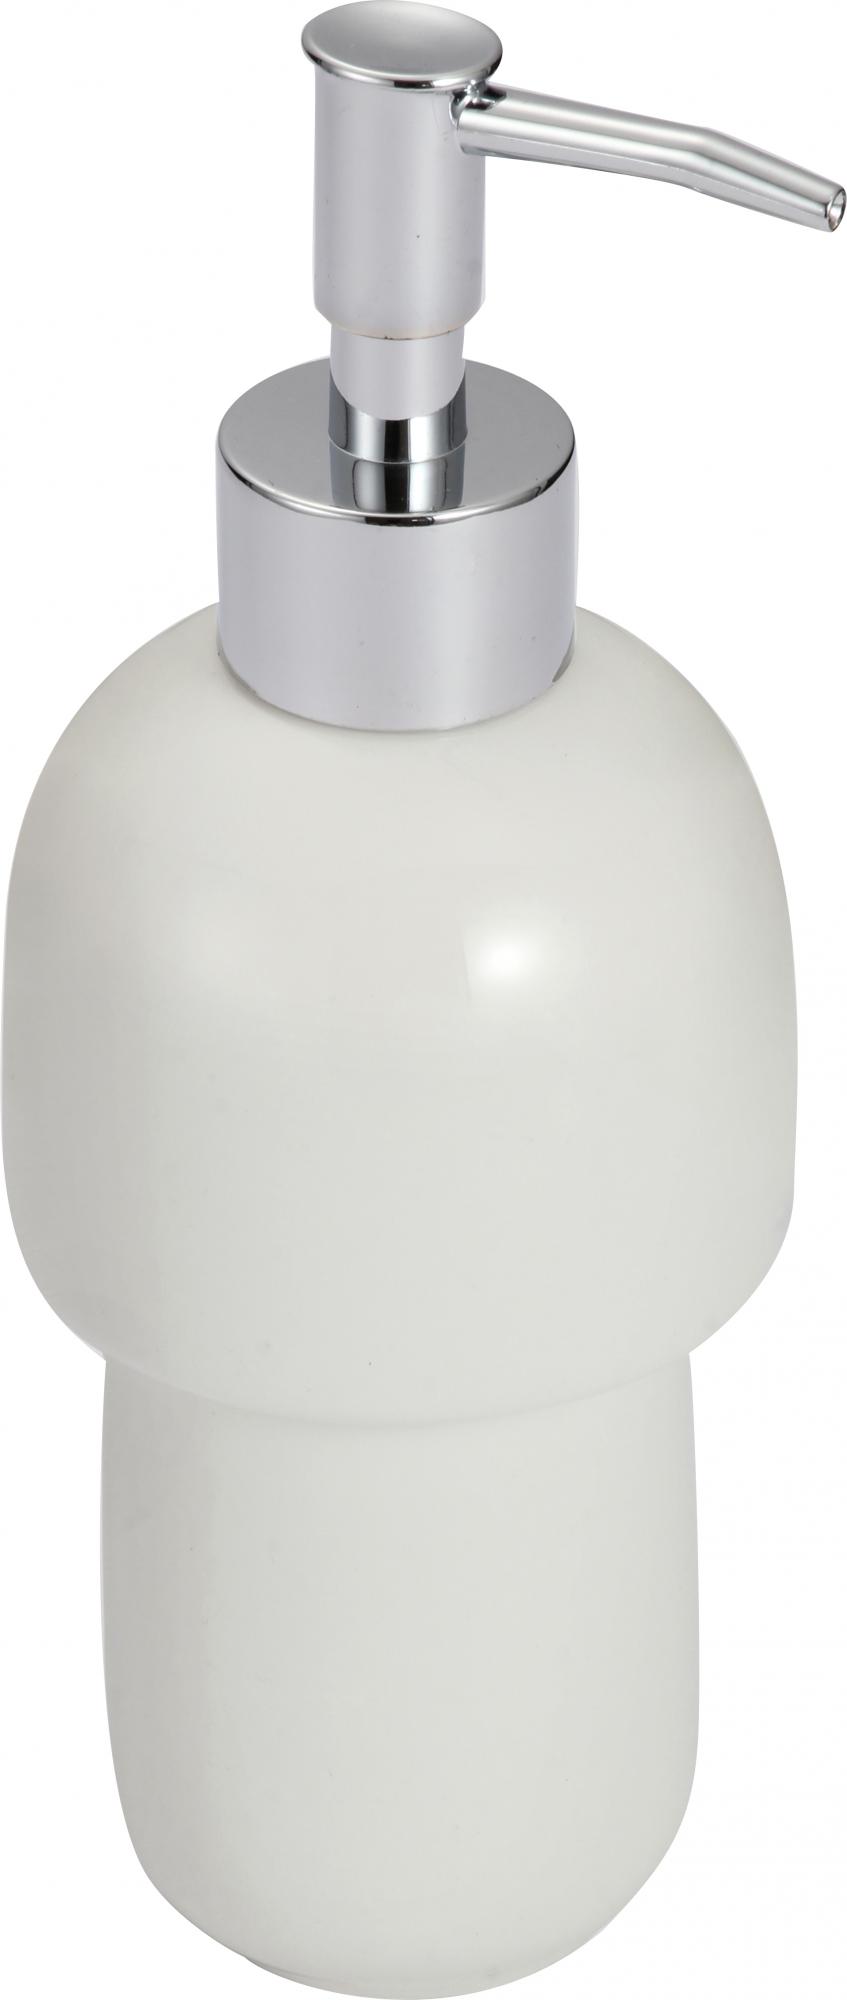 Дозатор Savol для жидкого мыла керамический (S-TCZYQ) - фото 1